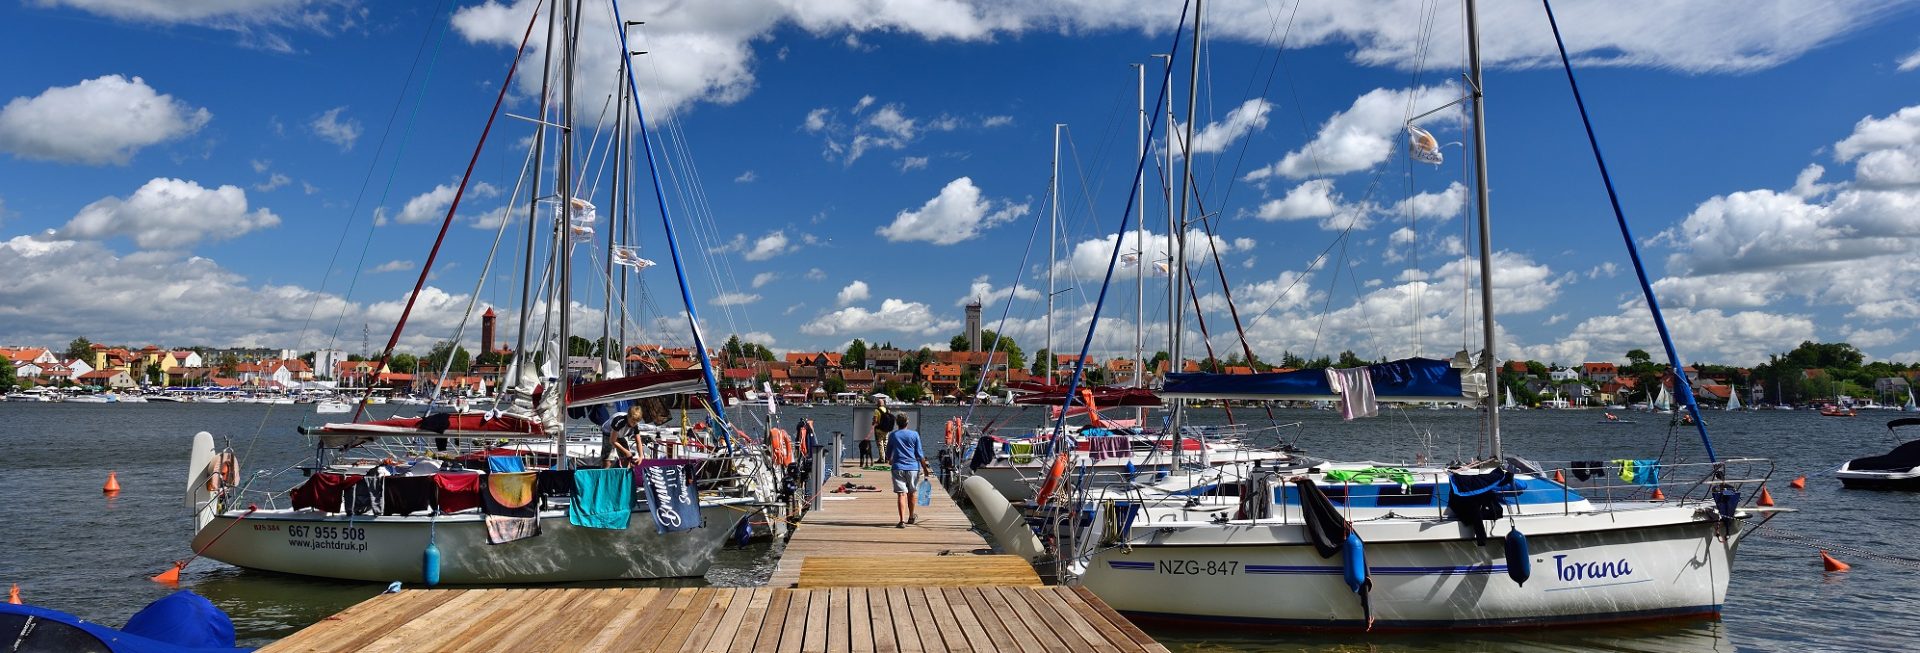 Przystań żeglarska w Mikołajkach. Na zdjęciu kładka na przystani do której po prawej i lewej stronie są zacumowane jachty i łodzie żeglarskie.   